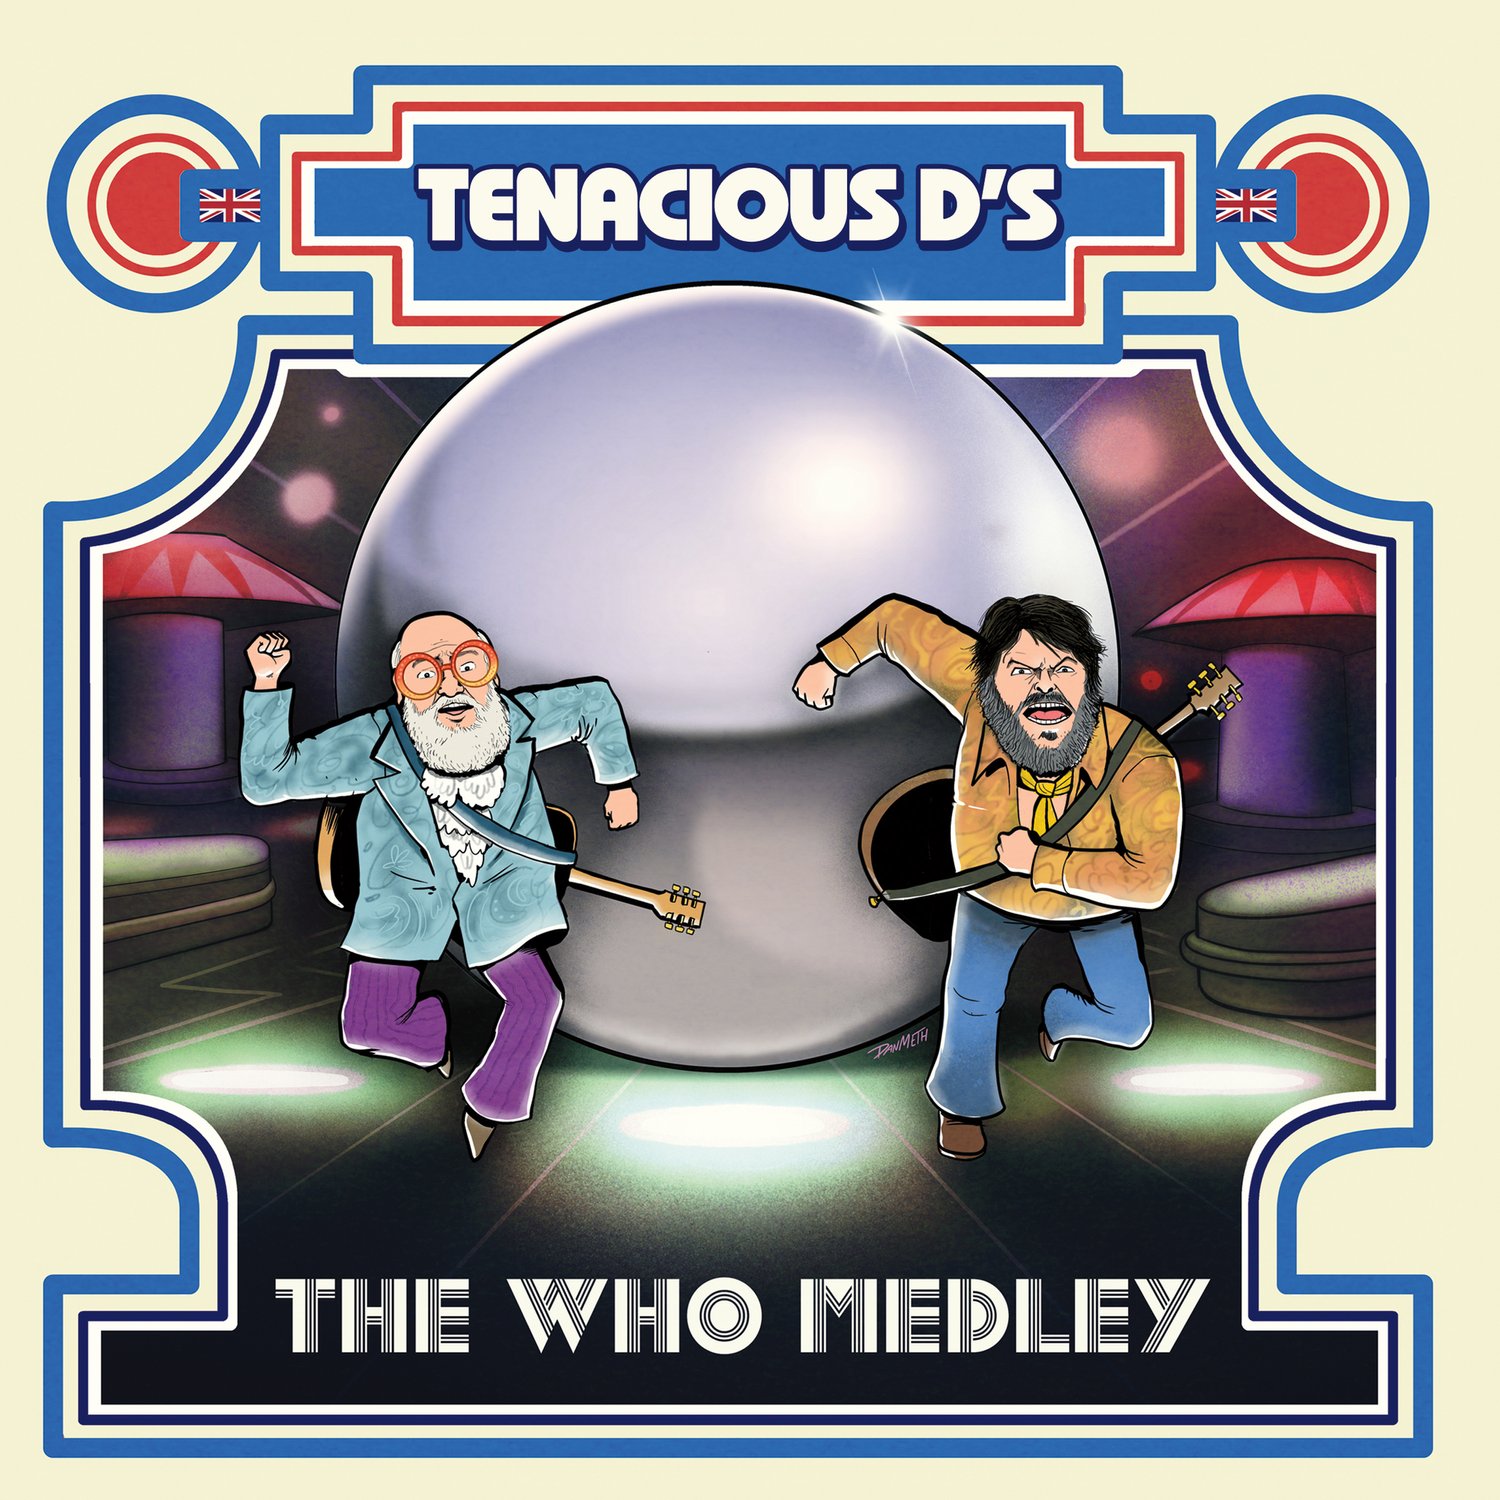 Tenacious D – The Who Medley